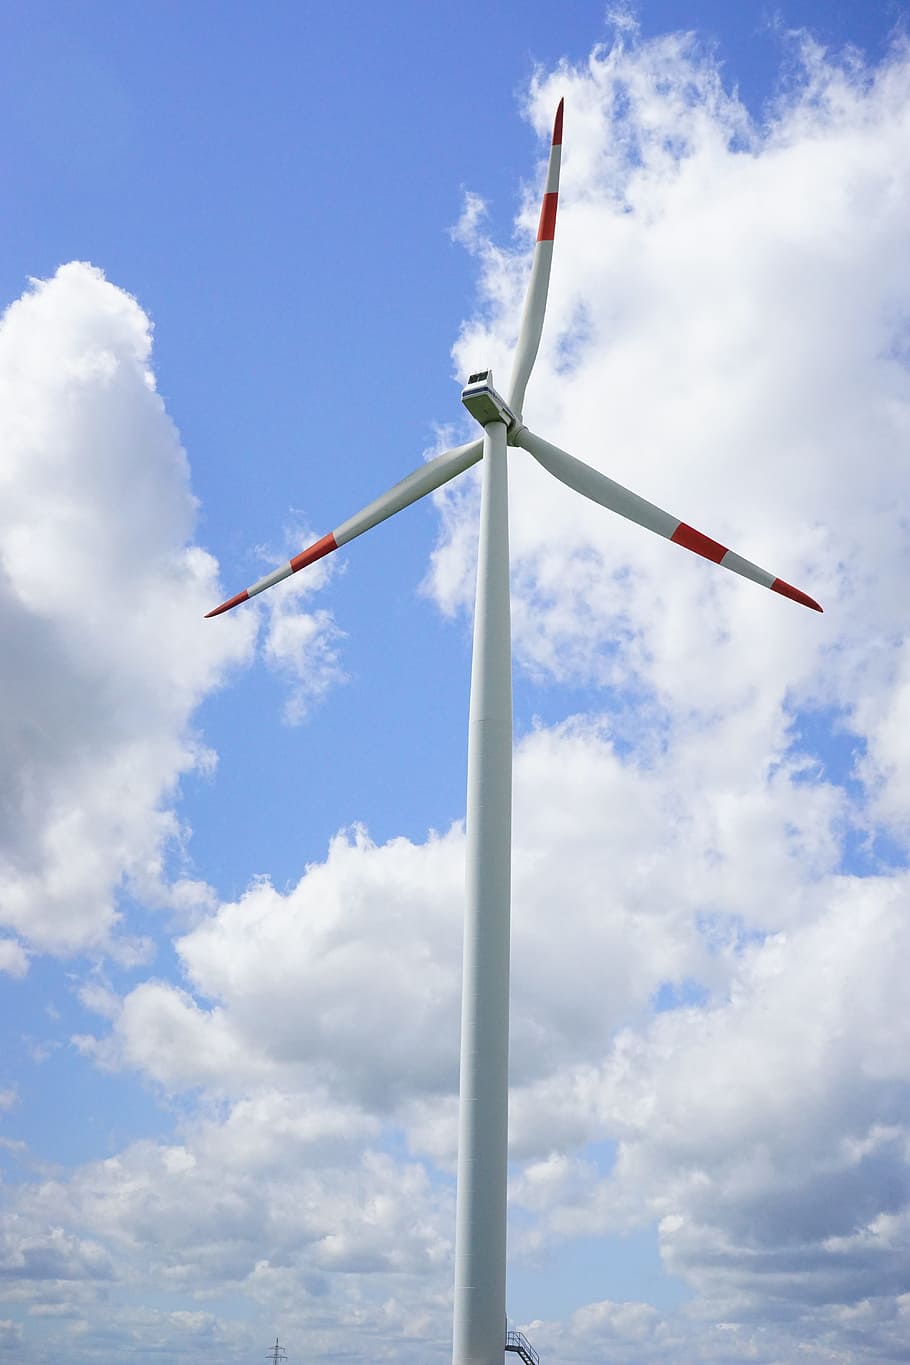 Energía eólica, windräder, energía, medio ambiente, corriente, viento, generación de energía, ecológico, hélice, tecnología ambiental